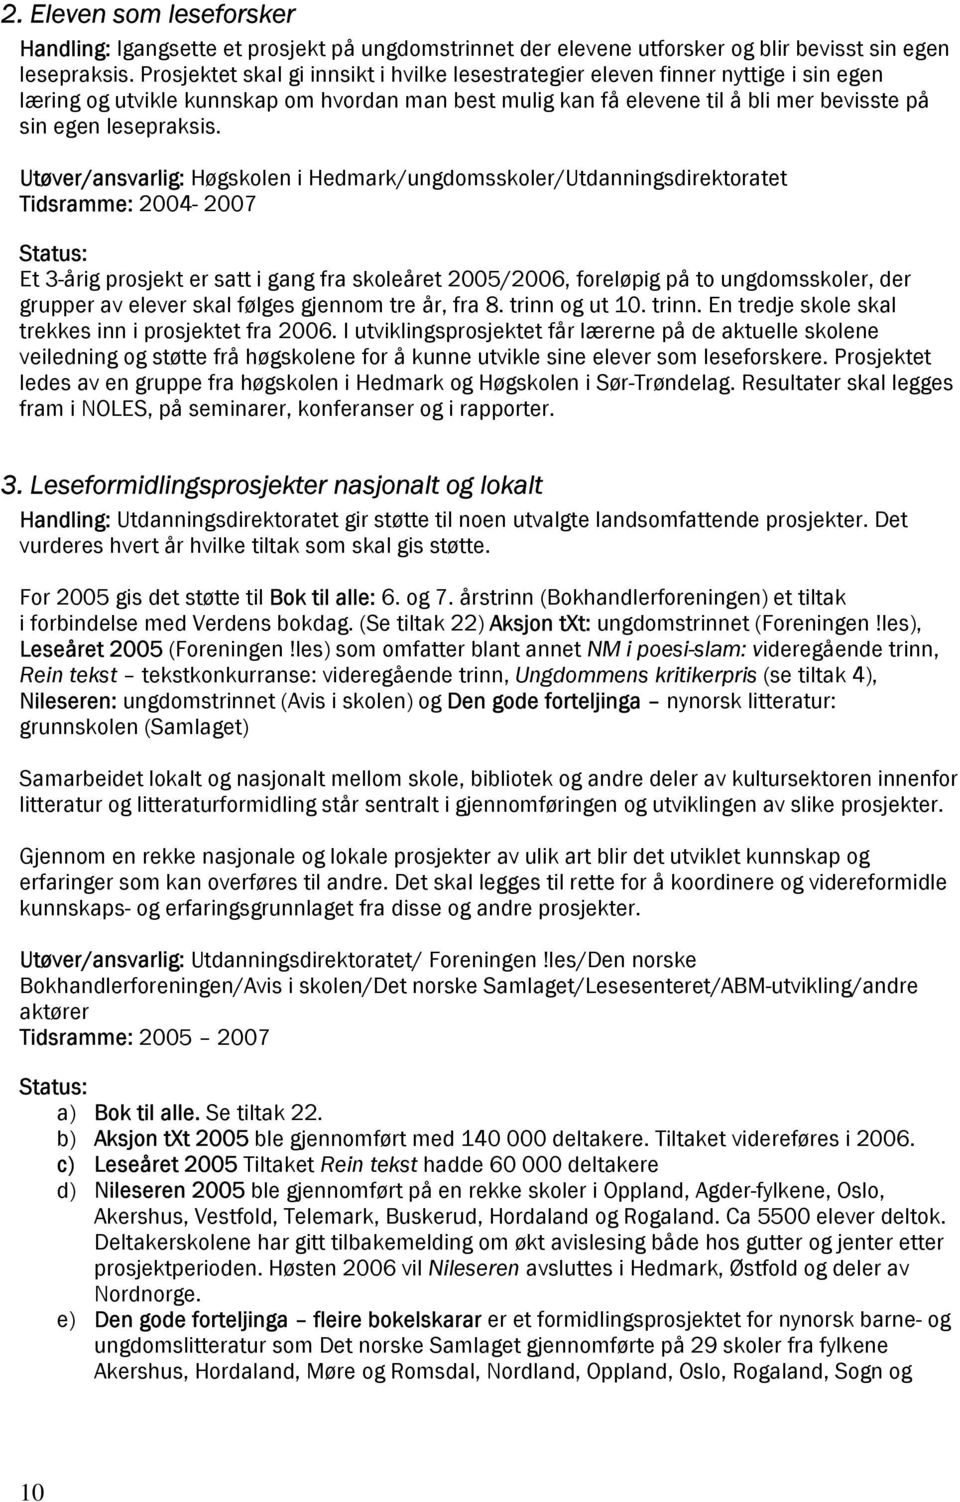 Utøver/ansvarlig: Høgskolen i Hedmark/ungdomsskoler/Utdanningsdirektoratet Tidsramme: 2004-2007 Et 3-årig prosjekt er satt i gang fra skoleåret 2005/2006, foreløpig på to ungdomsskoler, der grupper